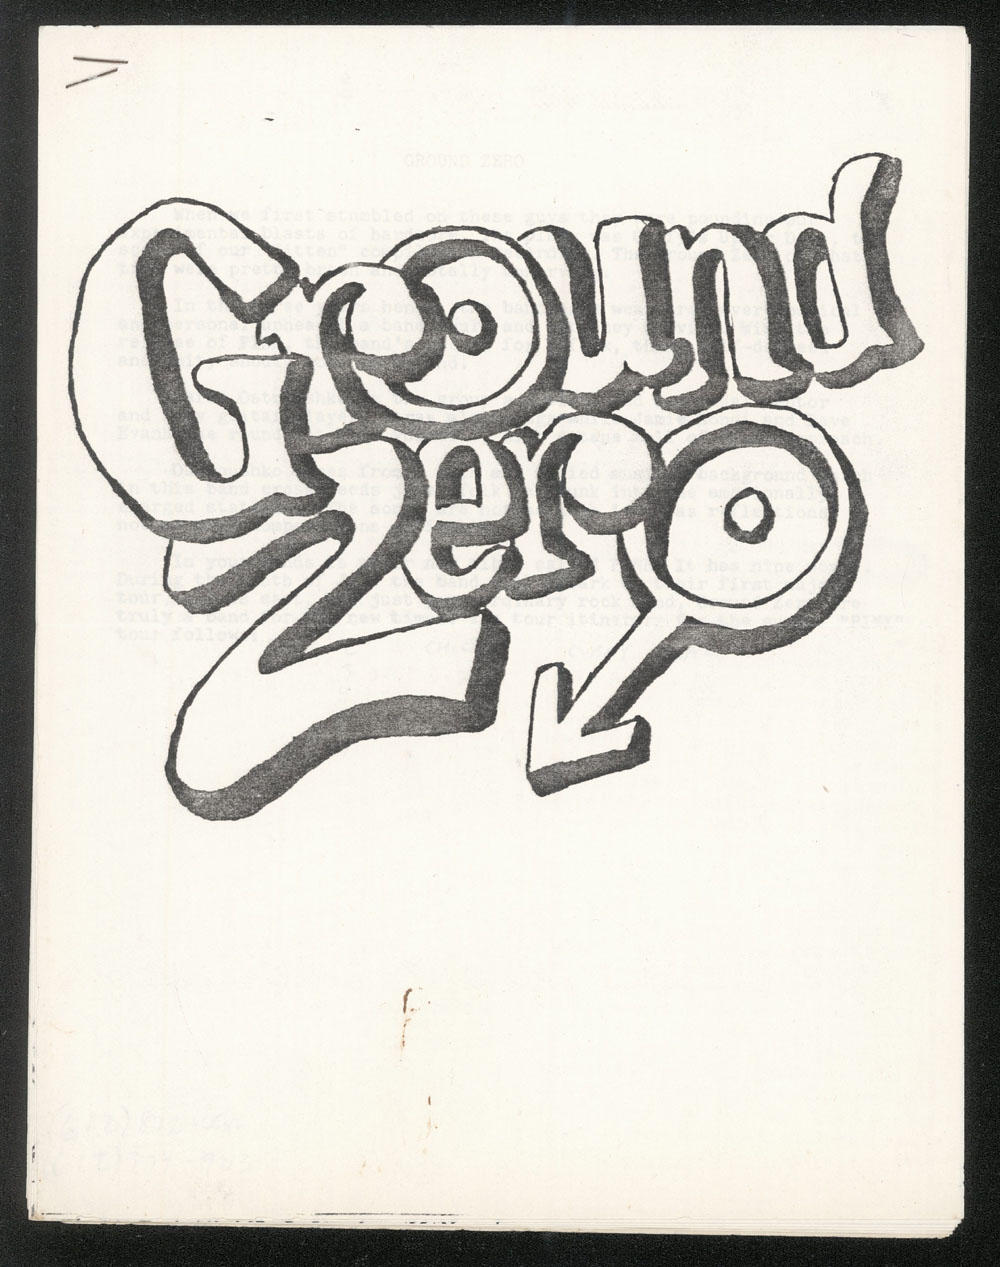 GROUND ZERO press kit